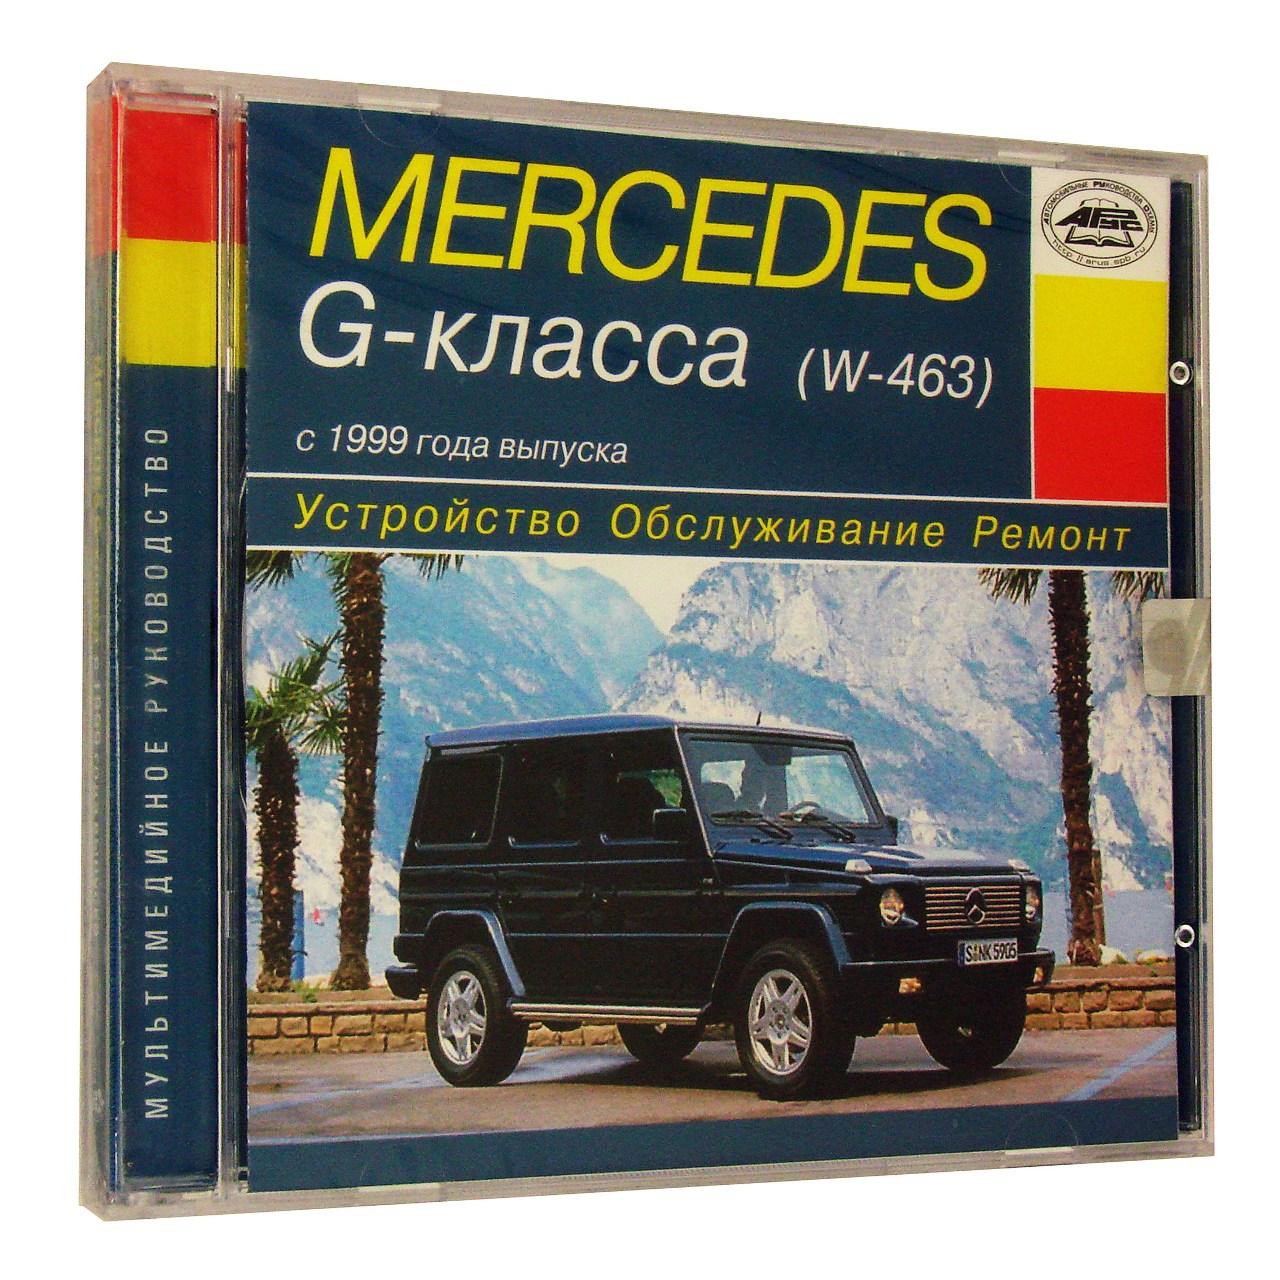 Компьютерный компакт-диск Mercedes-Benz G-класса с 1999 Устройство. Обслуживание. Ремонт. (ПК), фирма "RMG Multimedia",  1CD